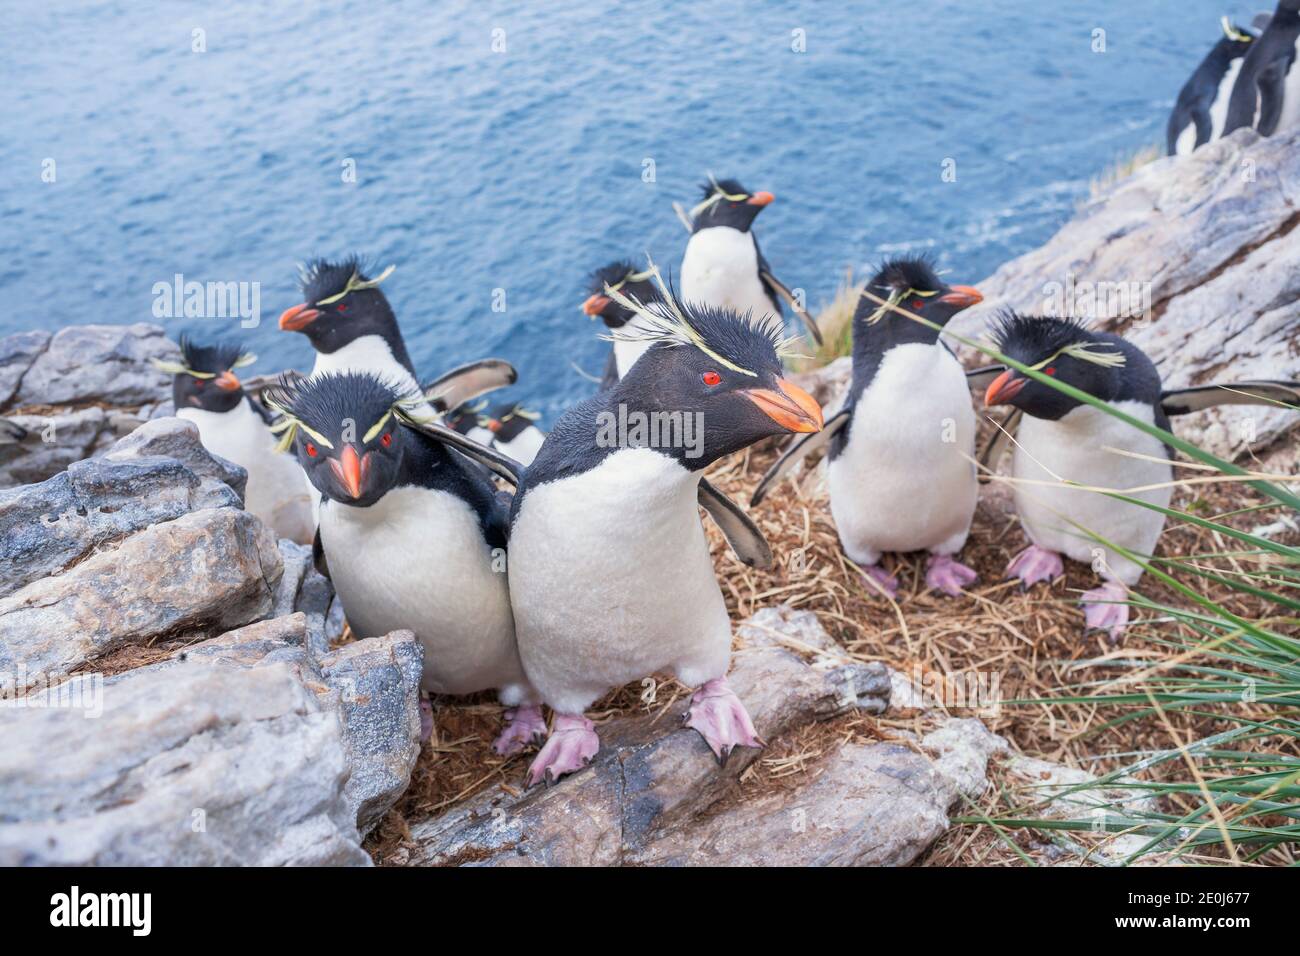 Gruppo di pinguini rockhopper (Eudyptes crisocome crisocome) su un isolotto roccioso, Falkland orientale, Isole Falkland, Sud America Foto Stock